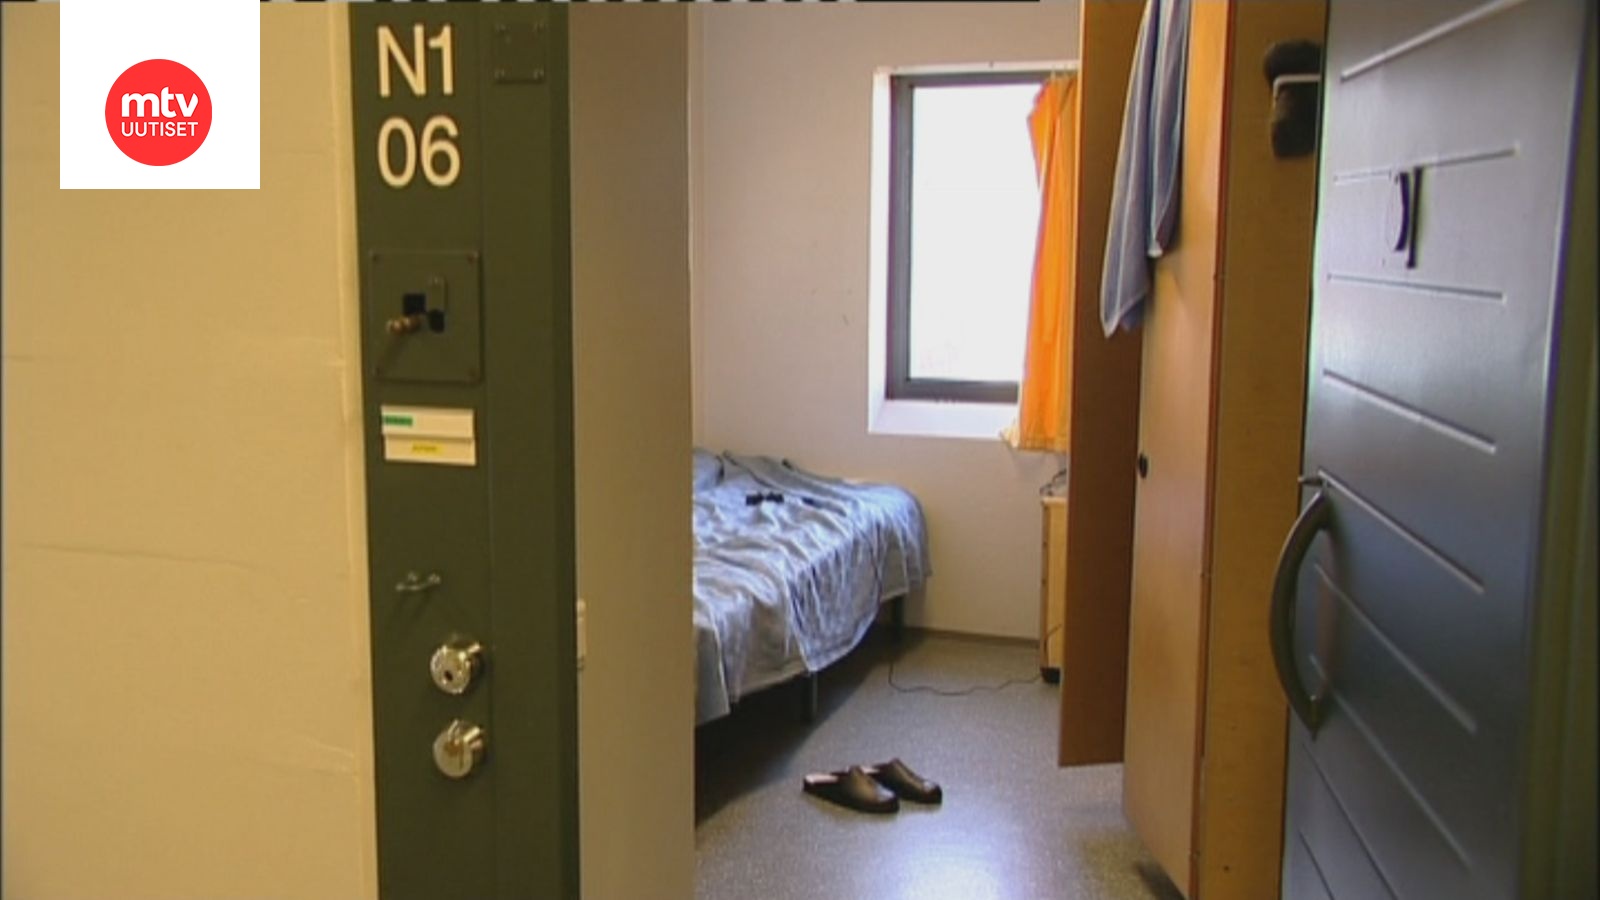 Seksuaalirikoksista tuomitut vangit tyytymättömimpiä elämäänsä – vangeilla  on neljä erilaista tapaa sopeutua linna-arkeen 